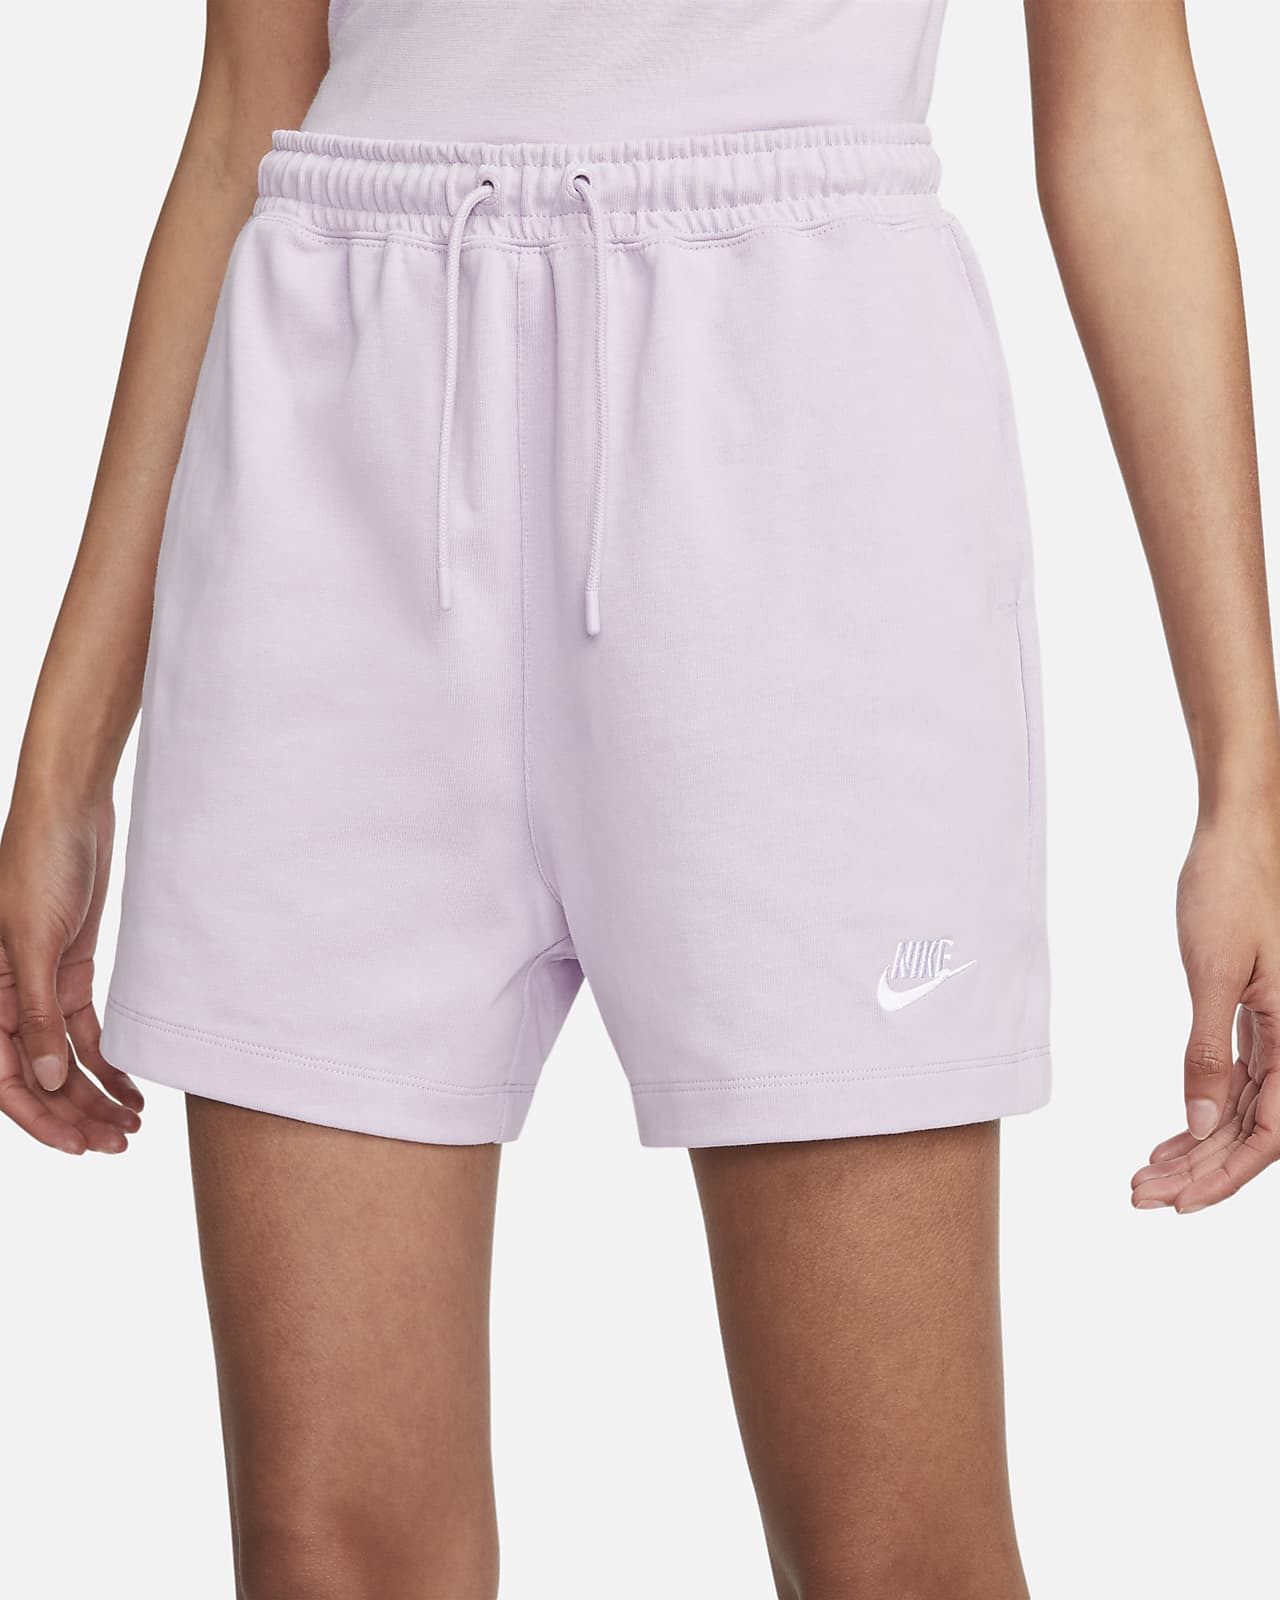 Nike Fleece shorts  Nike shorts women, Cotton shorts women, Nike